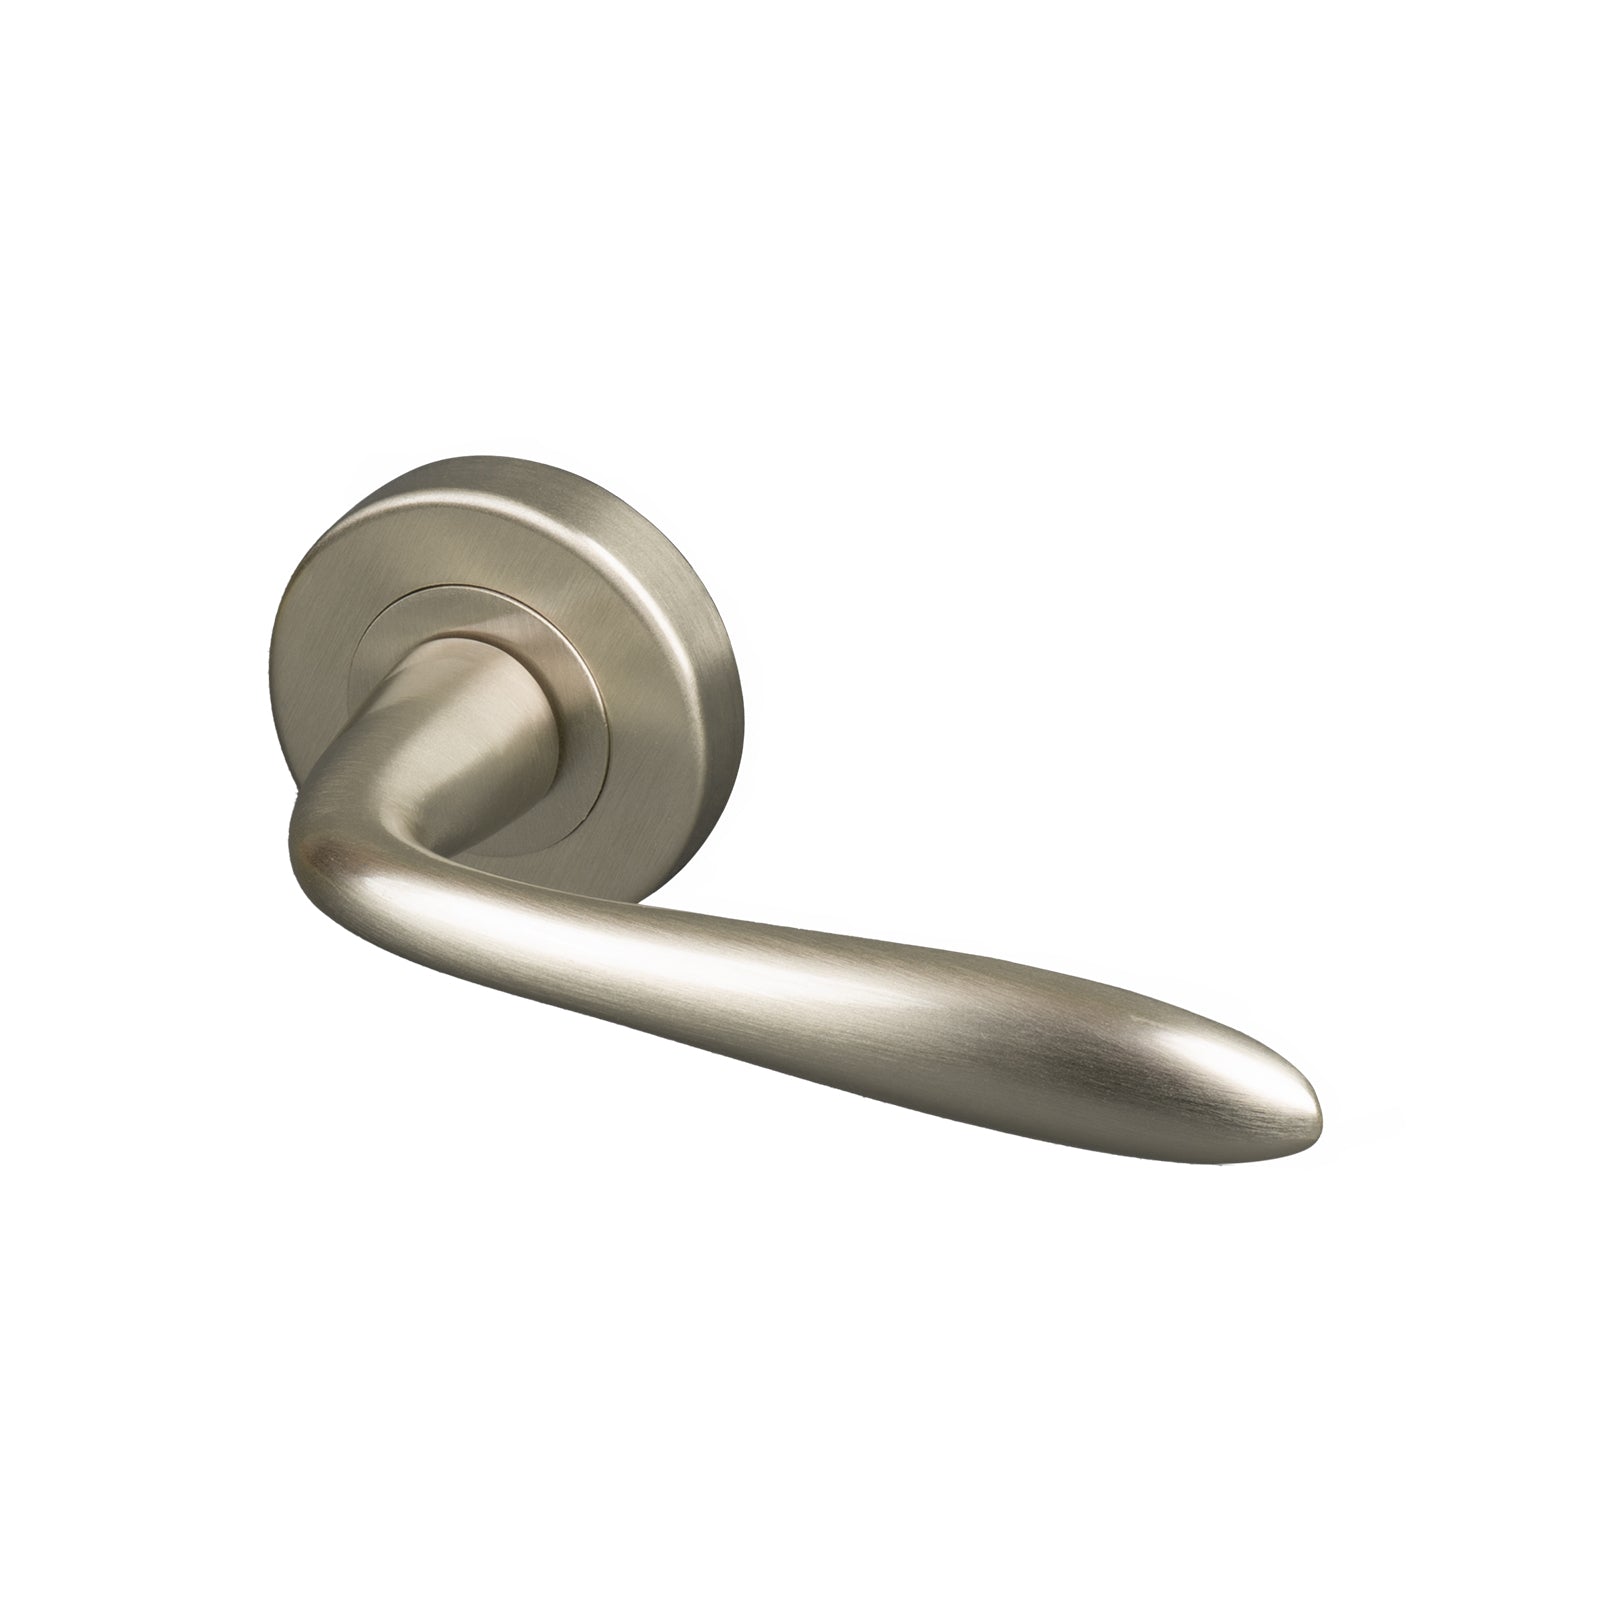 Satin nickel Sutton round rose door handle, modern handles SHOW